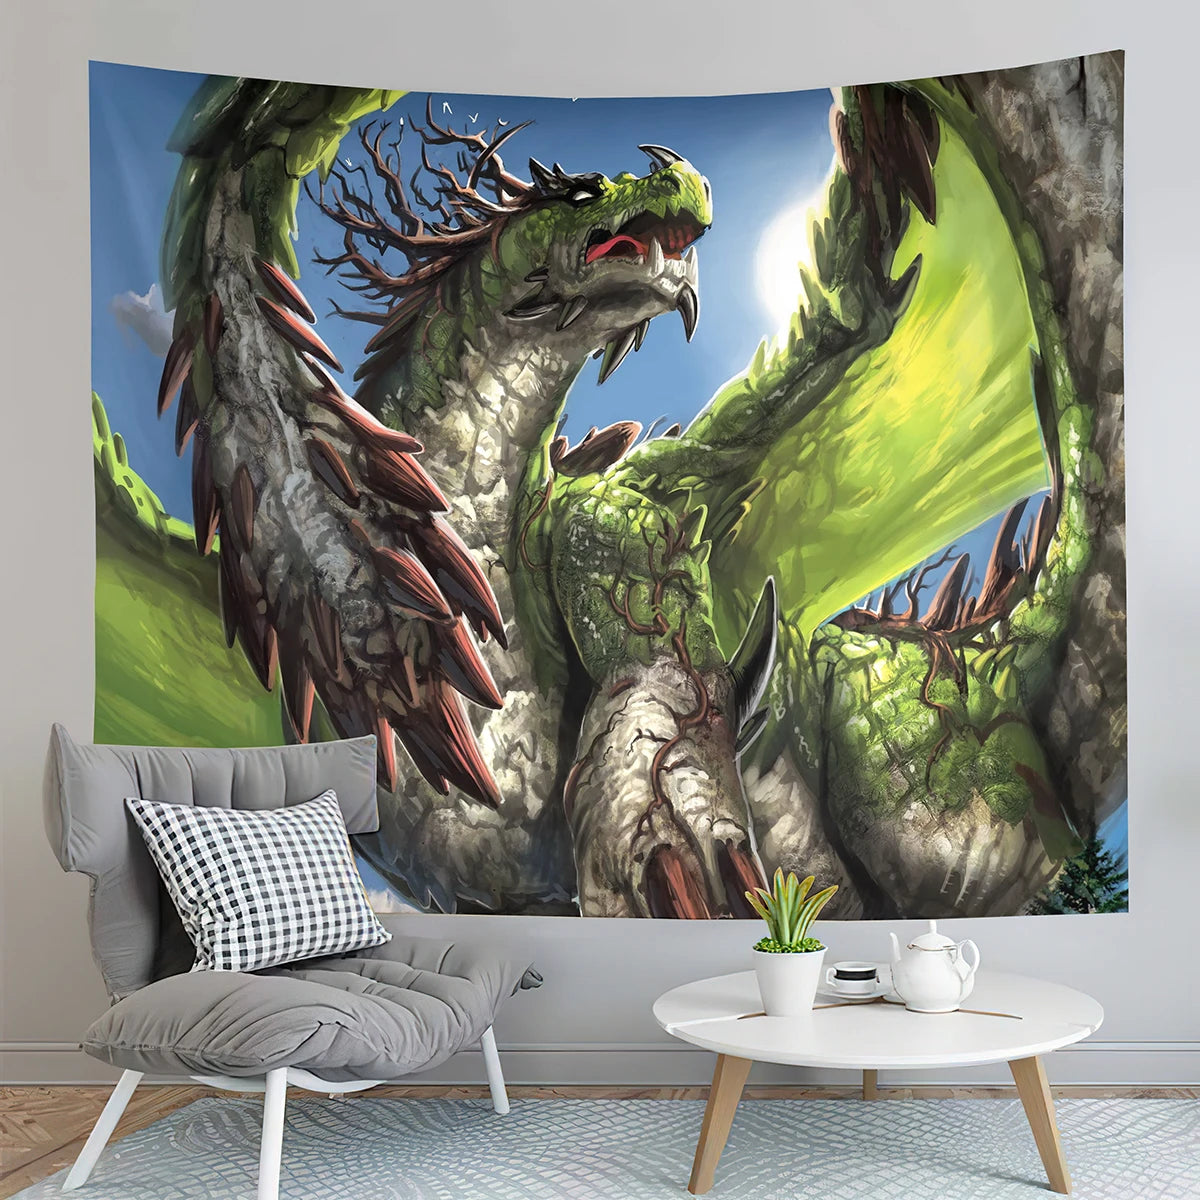 Tapisserie de Dragon médiévale, tapisserie de coucher de soleil en forêt, tapisserie d'animaux du monde fantastique, pour chambre à coucher, salon, décoration de maison